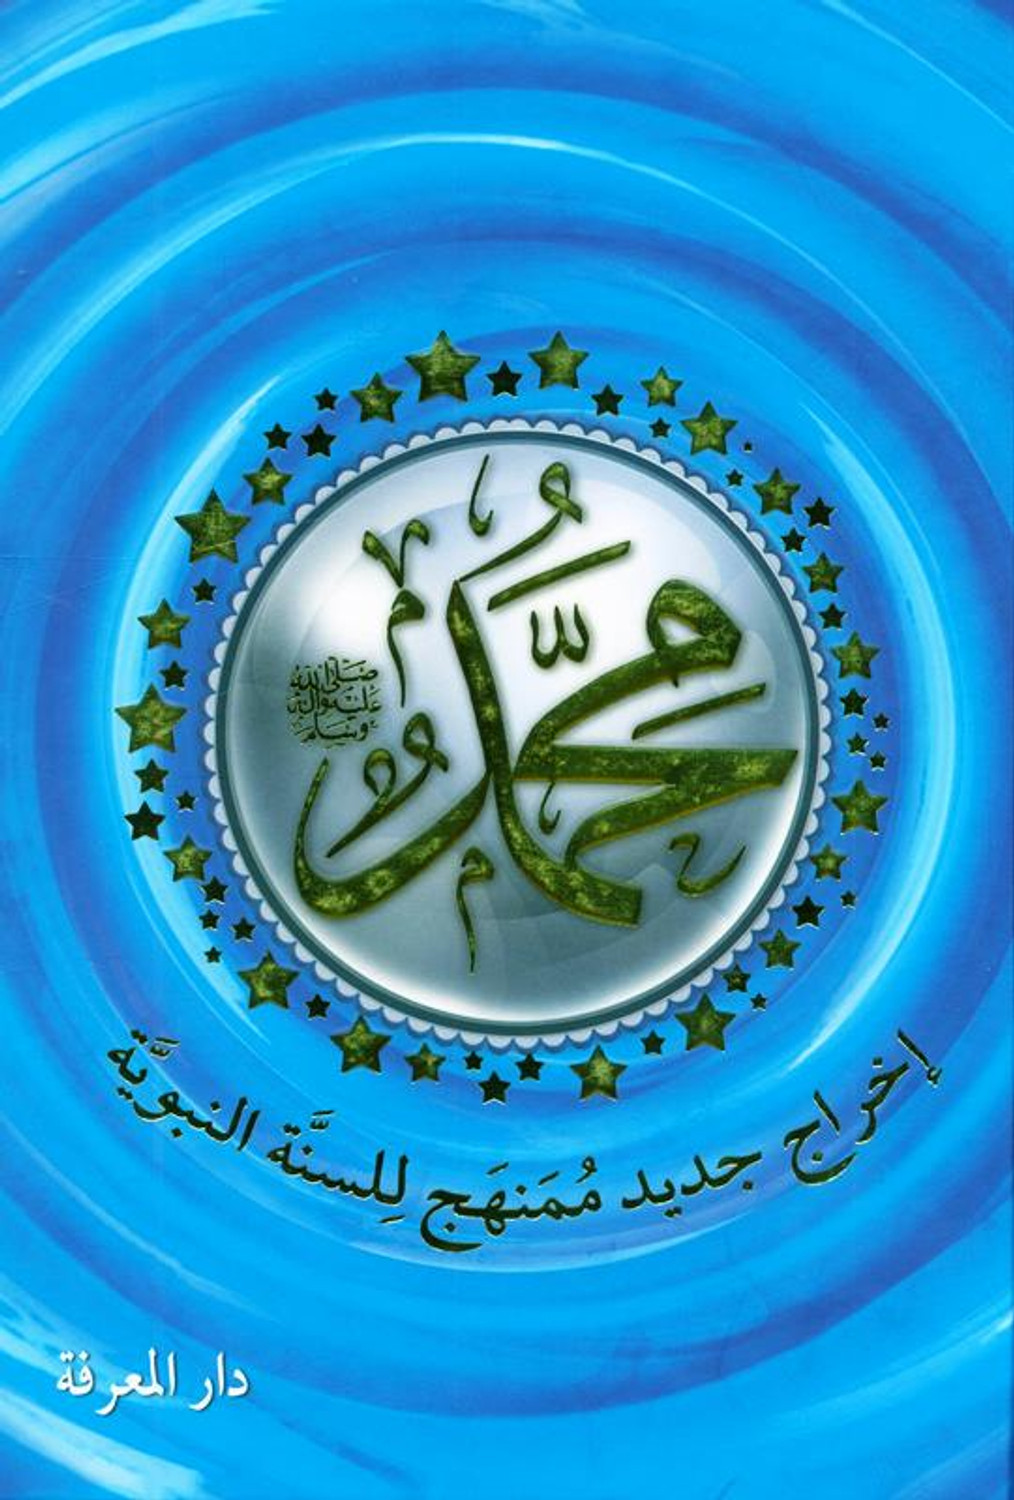 محمد ﷺ إخراج جديد ممنهج للسنة النبوية